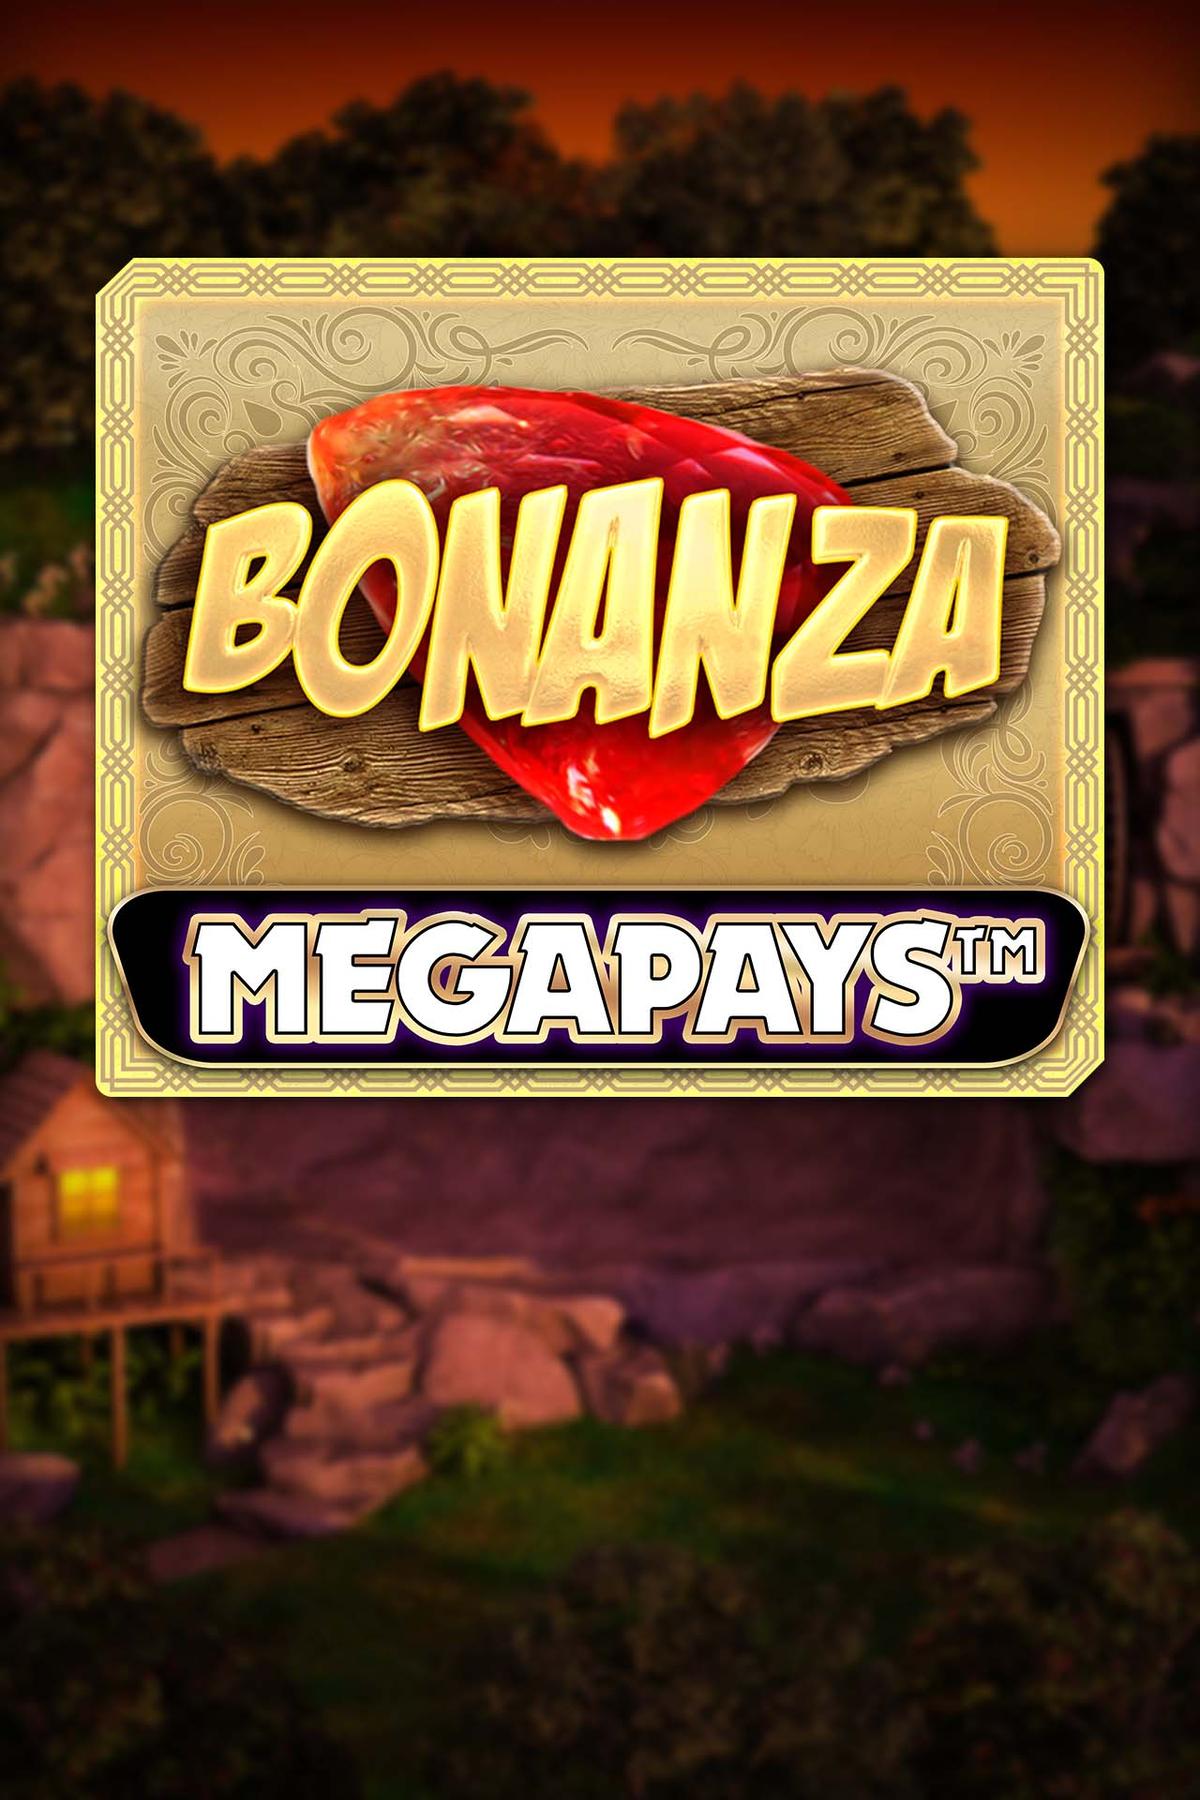 Bonanza Megapays